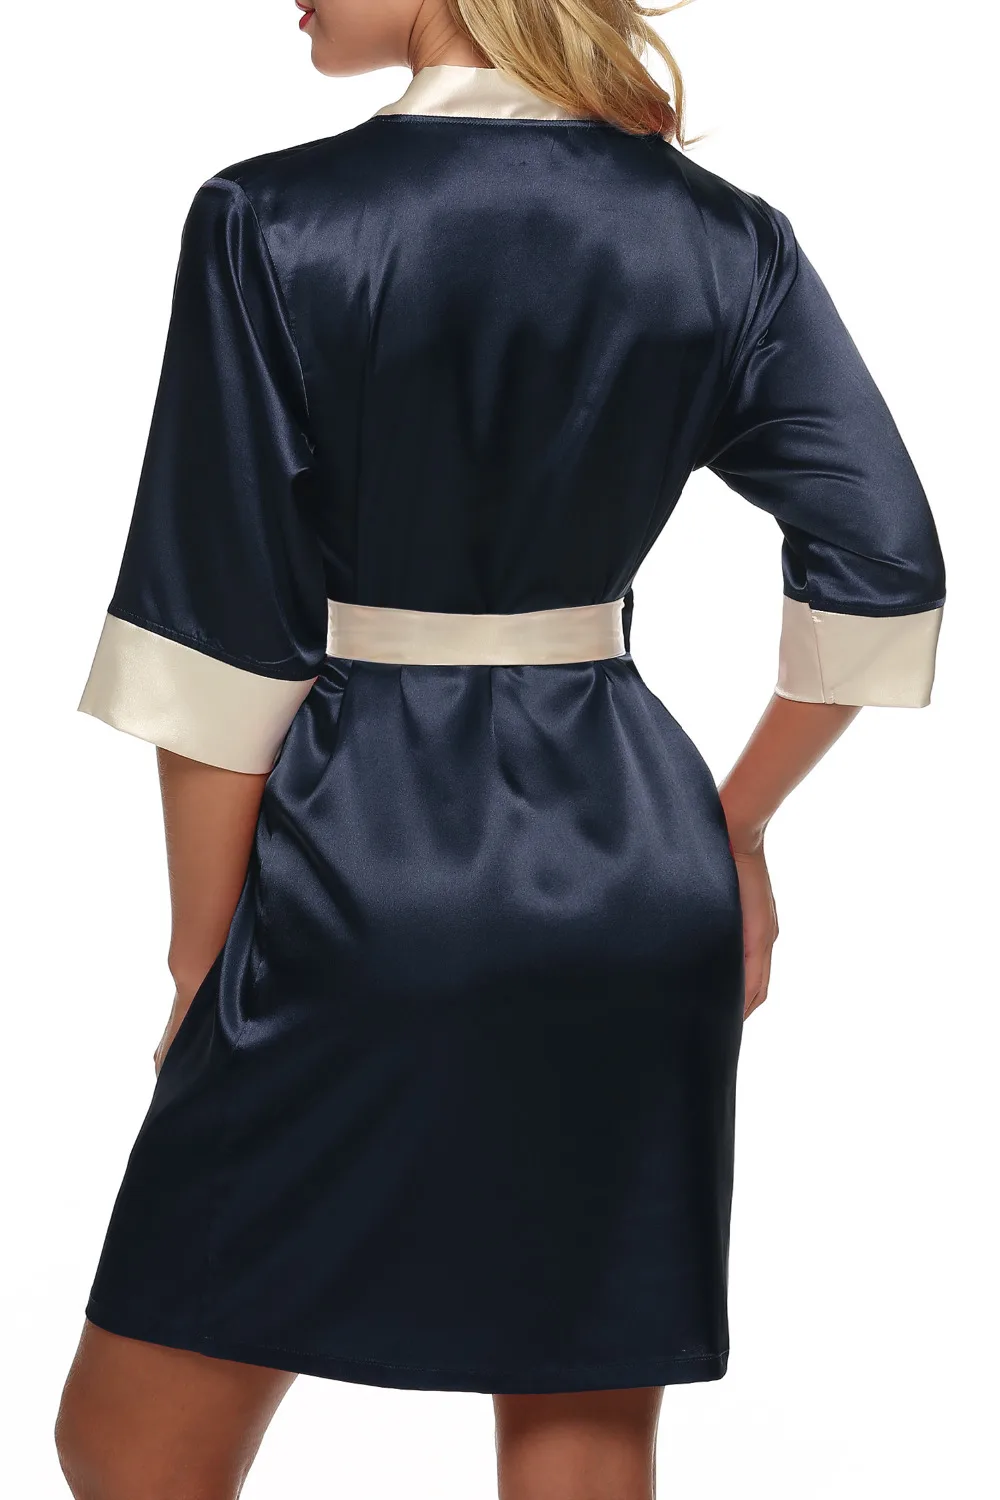 Ekouaer женское кимоно халат до колена халат сексуальное женское белье пижамы Короткие атласные кружева Ночное белье невесты Халаты XS-XL